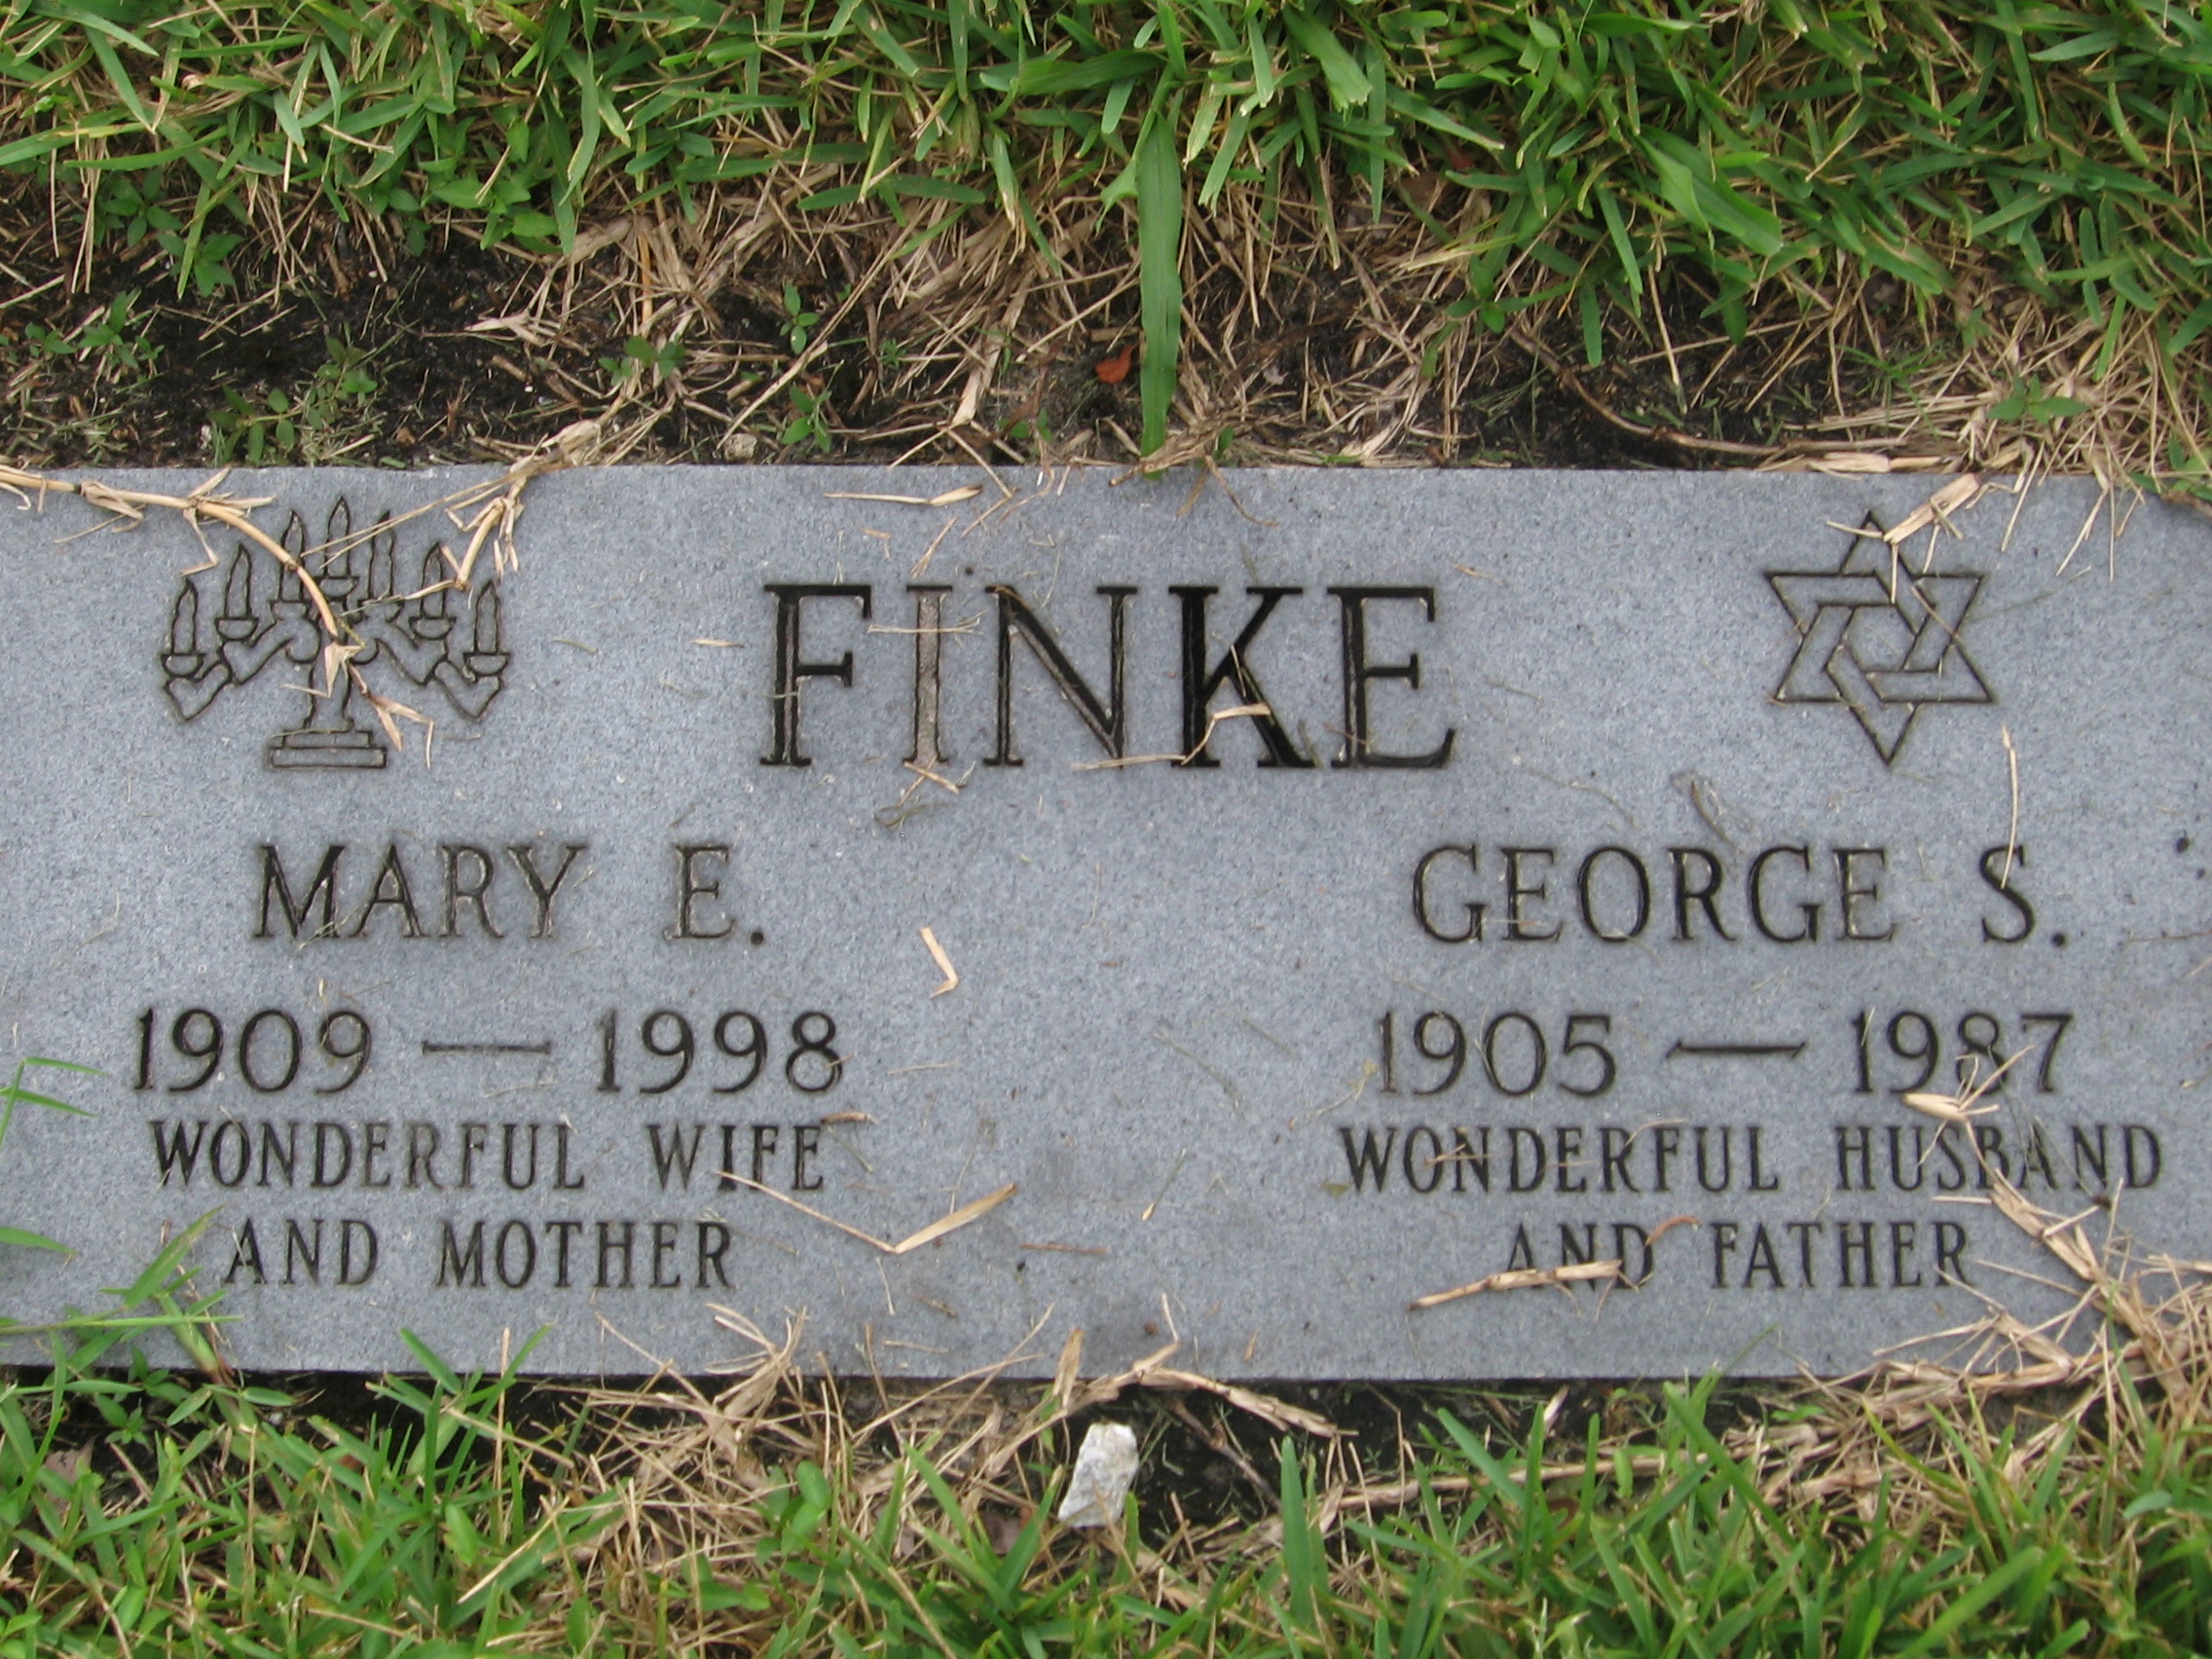 Mary E Finke